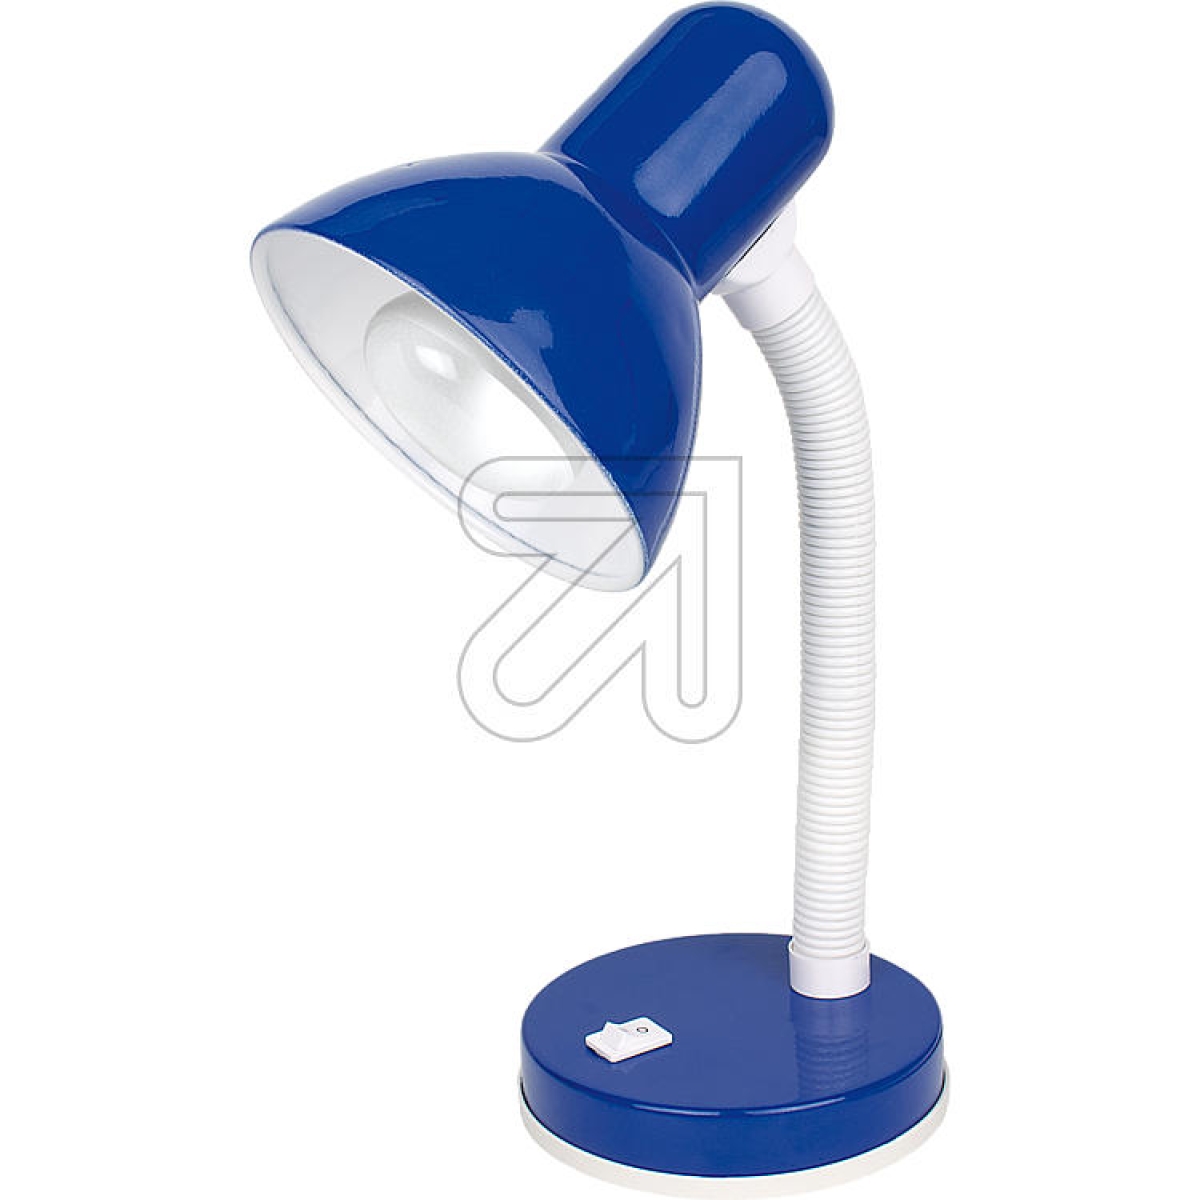 ORIONTable lamp blue LA 4-1061 (LA 4-860)Article-No: 662275